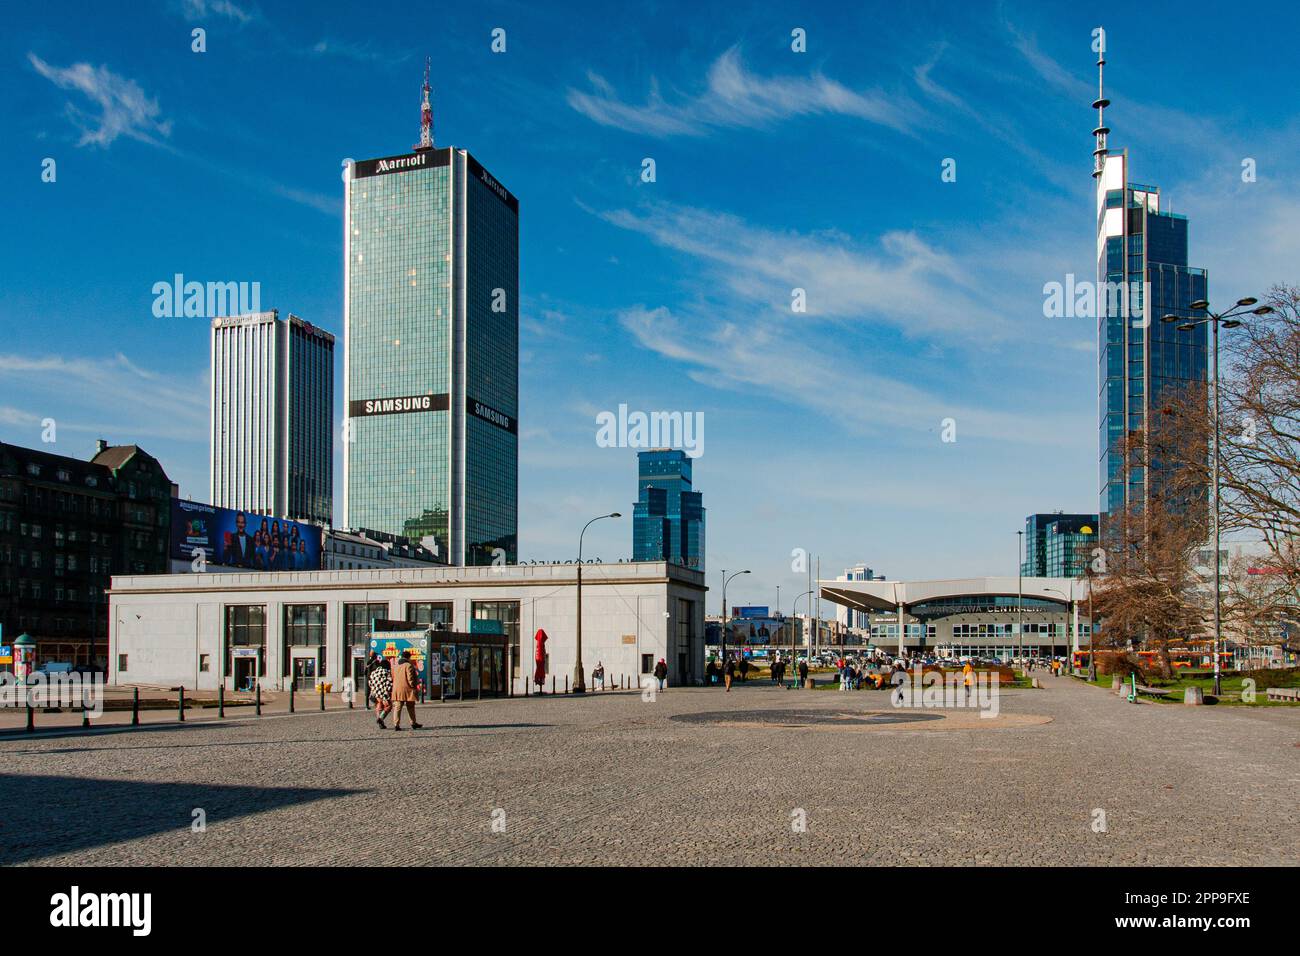 Vue sur la gare de Śródmieście Warszawa. Le Marriott Hotel en arrière-plan. Matin de printemps dans la capitale de la Pologne. Varsovie, Mazovia Polan Banque D'Images